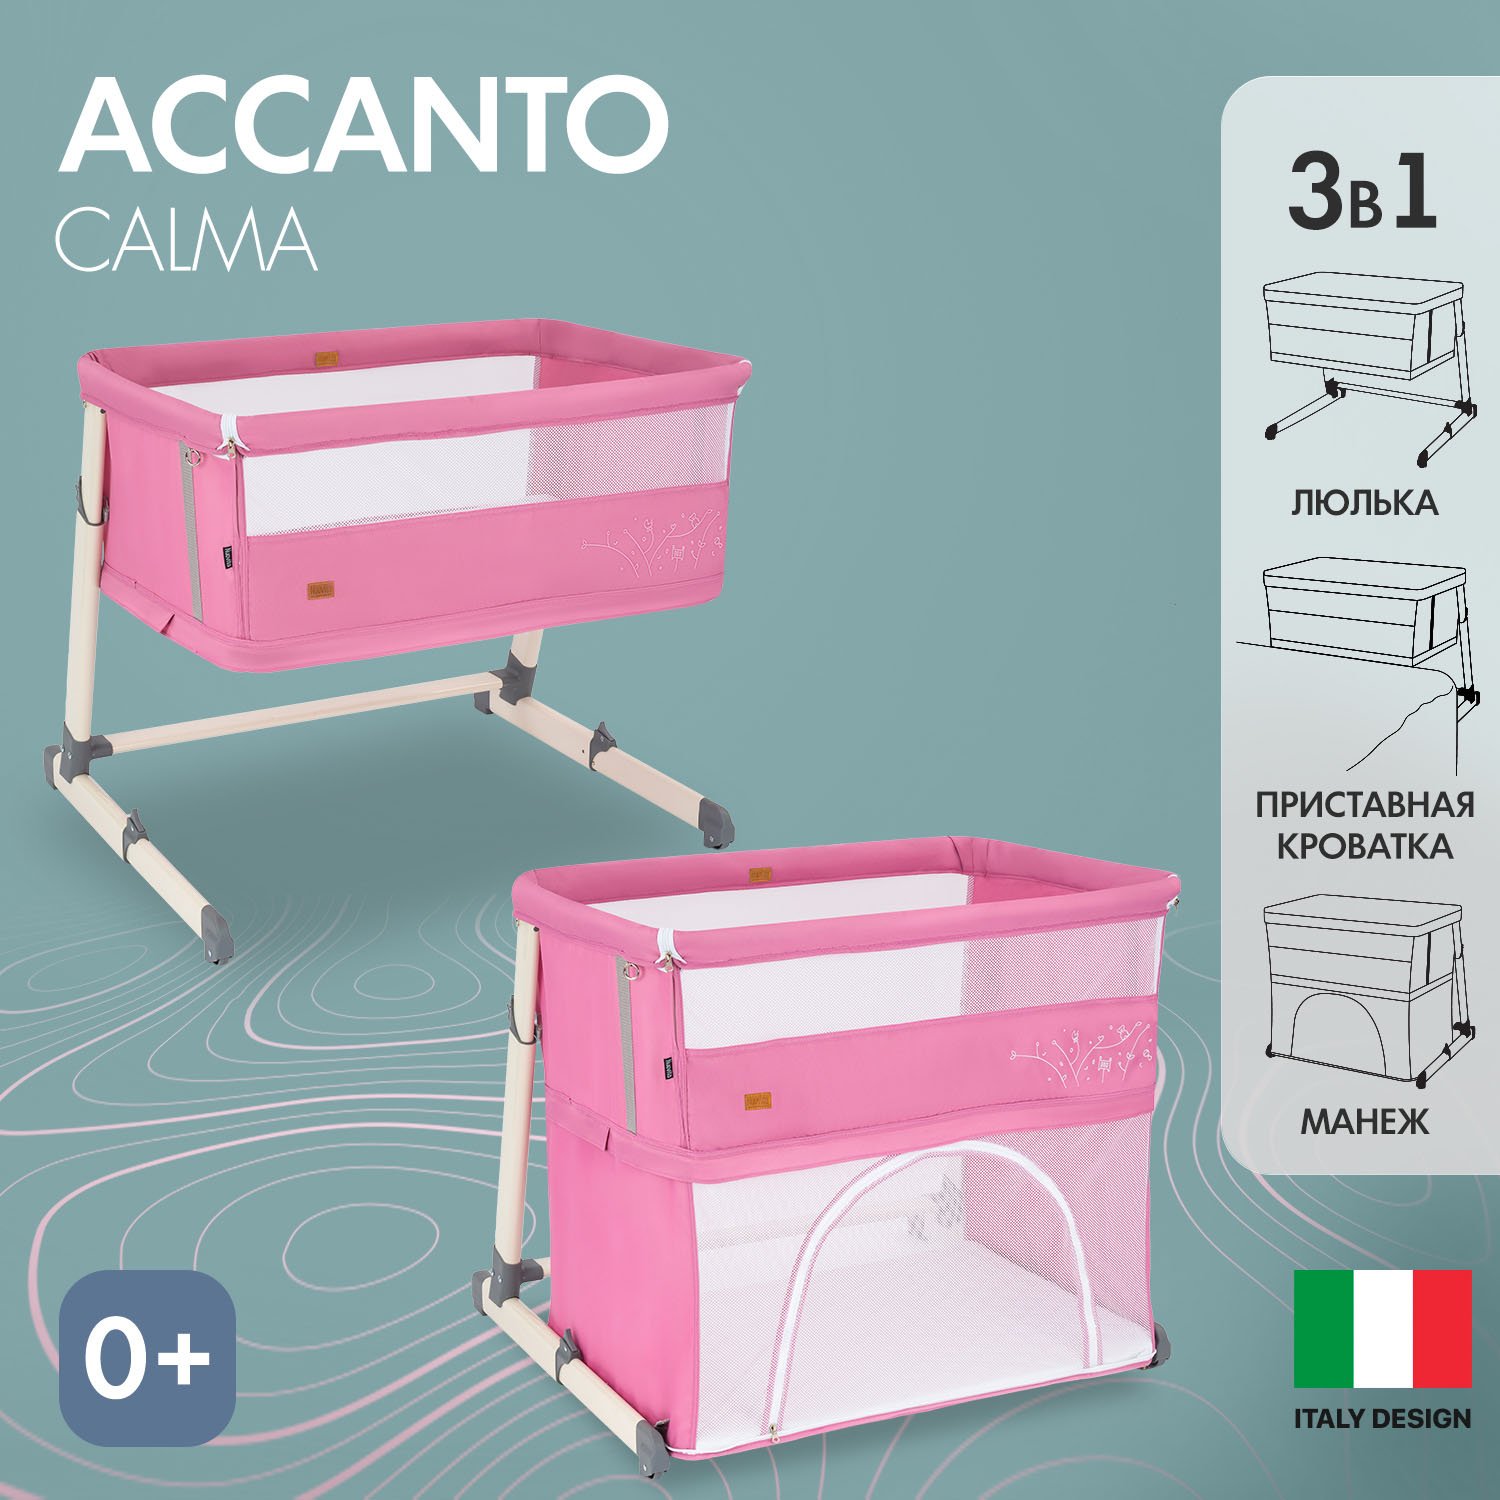 Детская приставная кроватка Nuovita Accanto Calma (Rosa/Розовый) коляска reindeer prestige wiklina люлька автокресло розовый белый w5 всесезон